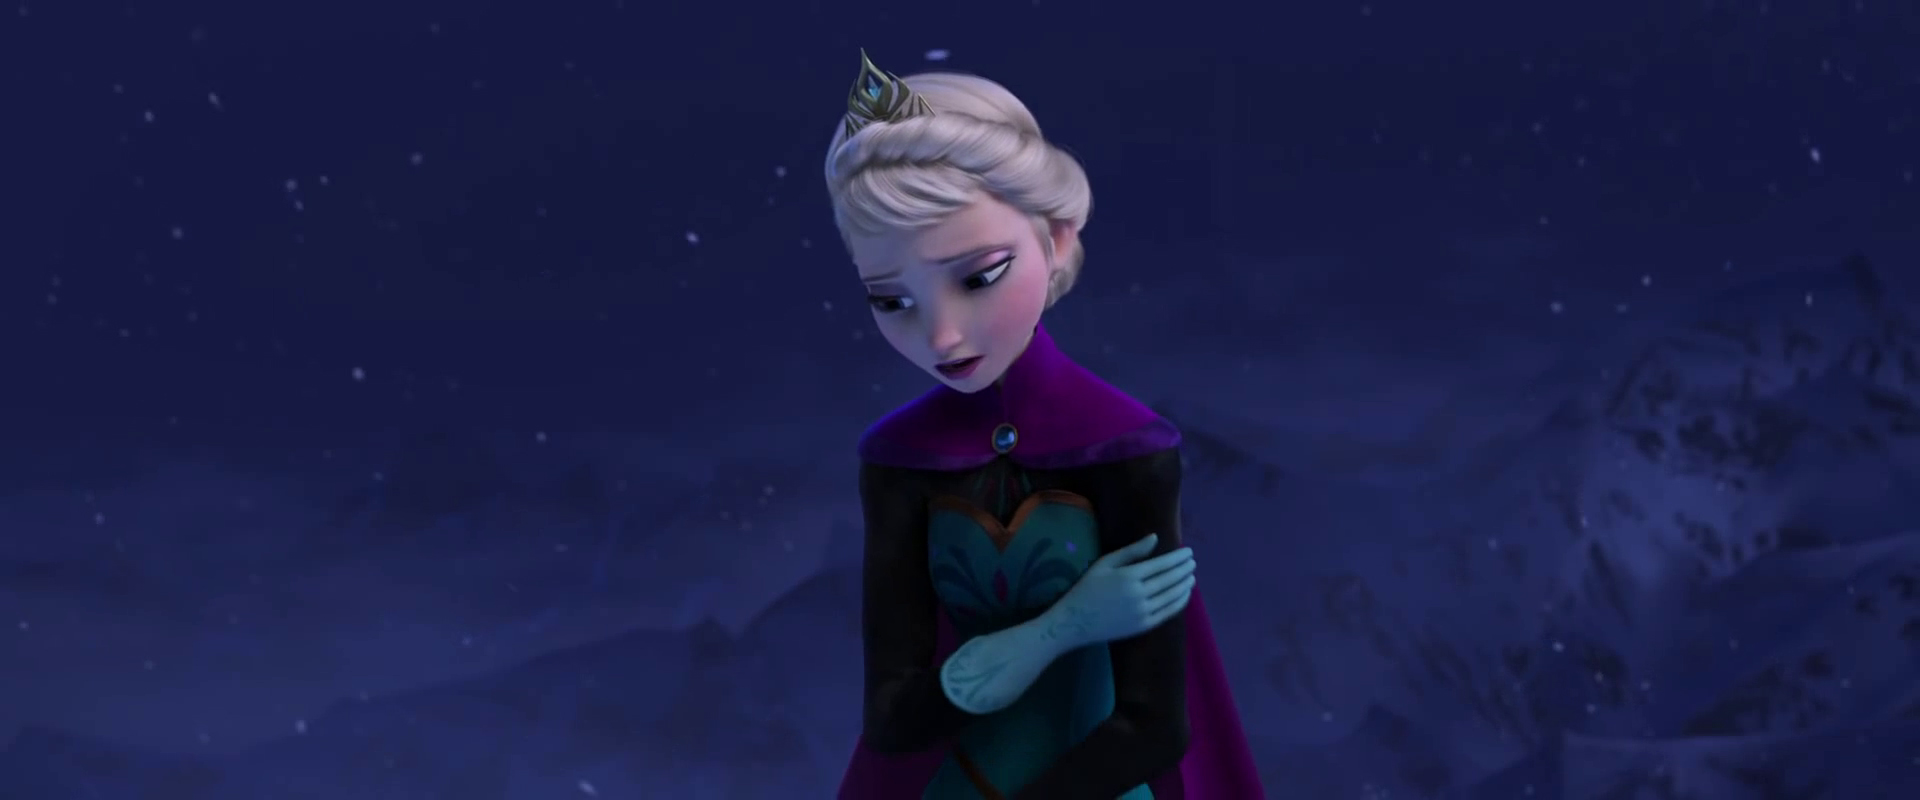 Hình nền  hình minh họa Anime váy xanh Phim đông lạnh Disney Công  chúa Elsa Hình nền máy tính Nhân vật hư cấu 1200x1736  spacer  150378  Hình  nền đẹp hd  WallHere